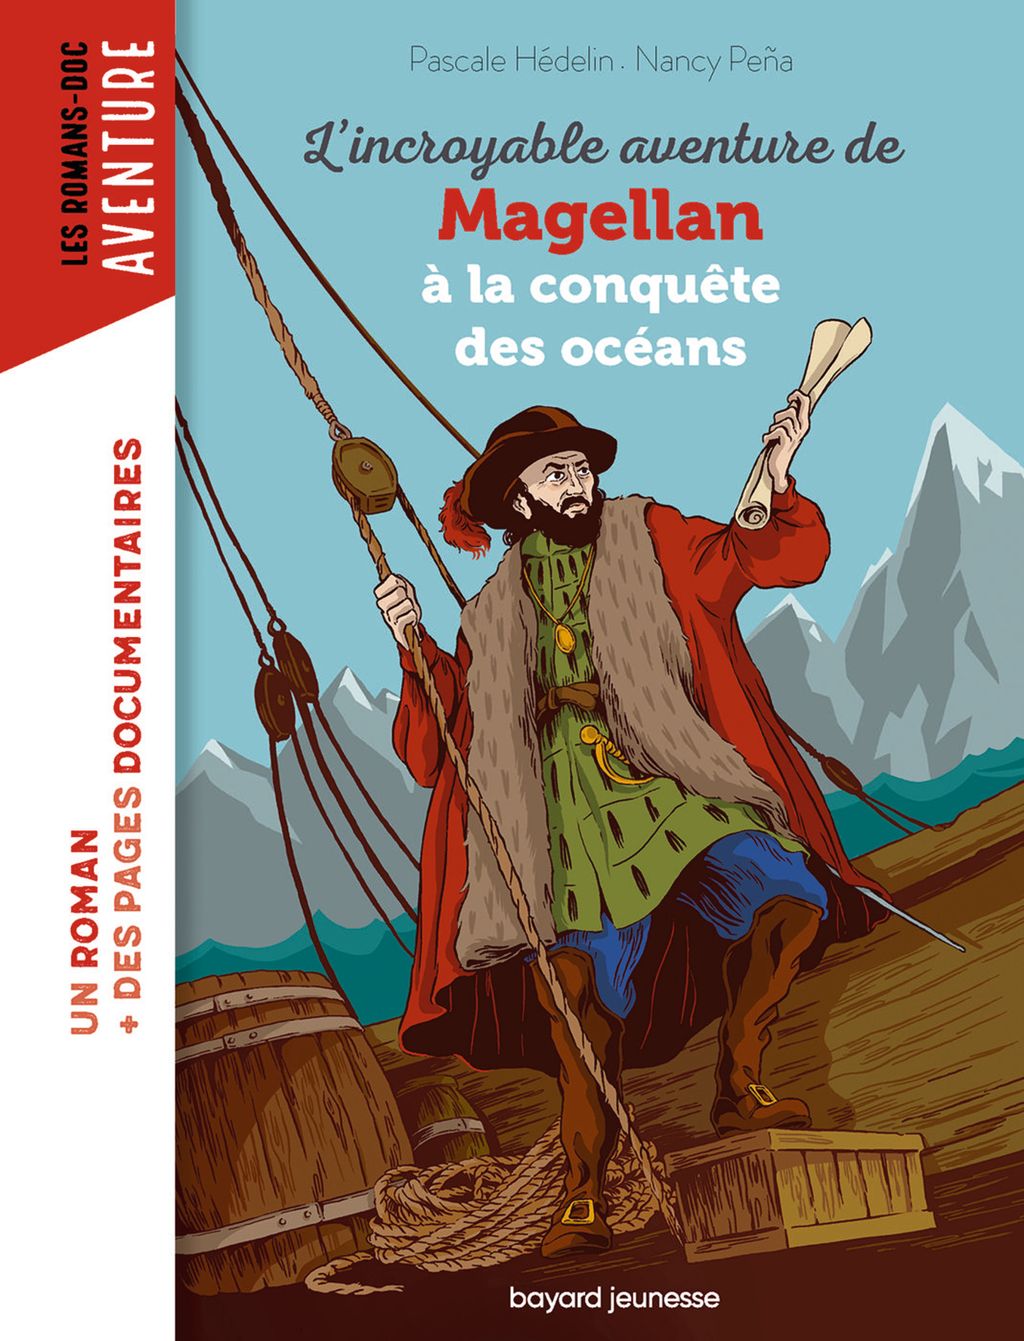 Couverture de « L’incroyable aventure de Magellan, à la conquête des océans »